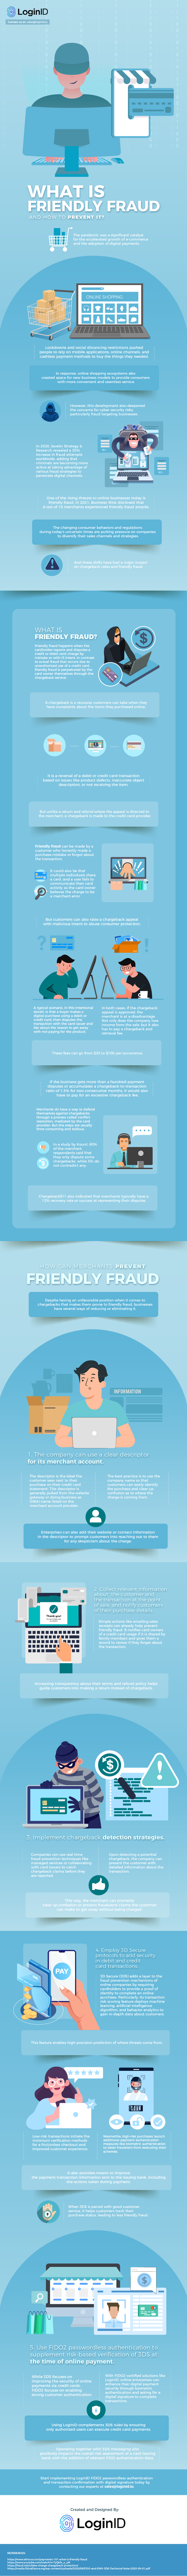 what is friendly fraud - dawd123